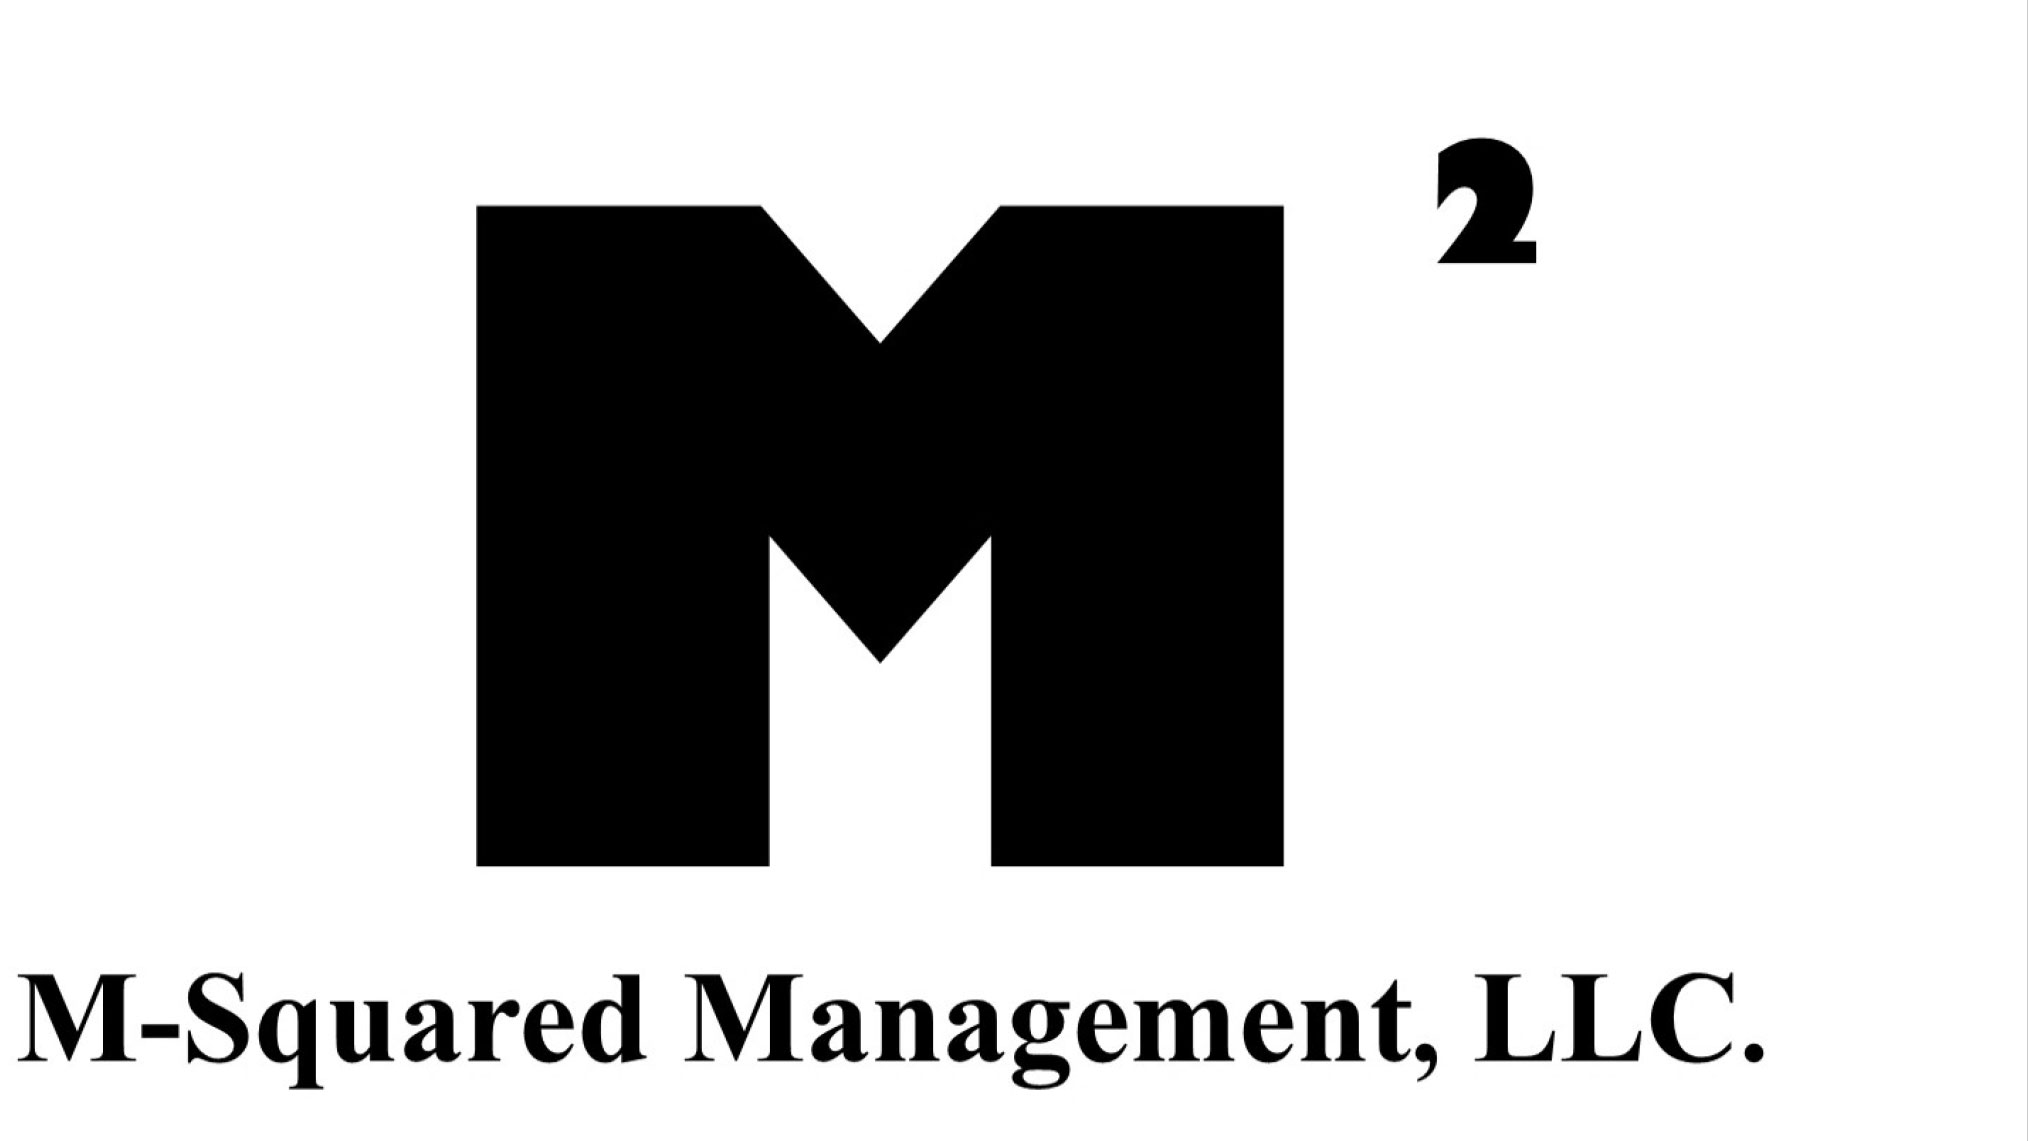 M-Squared Management